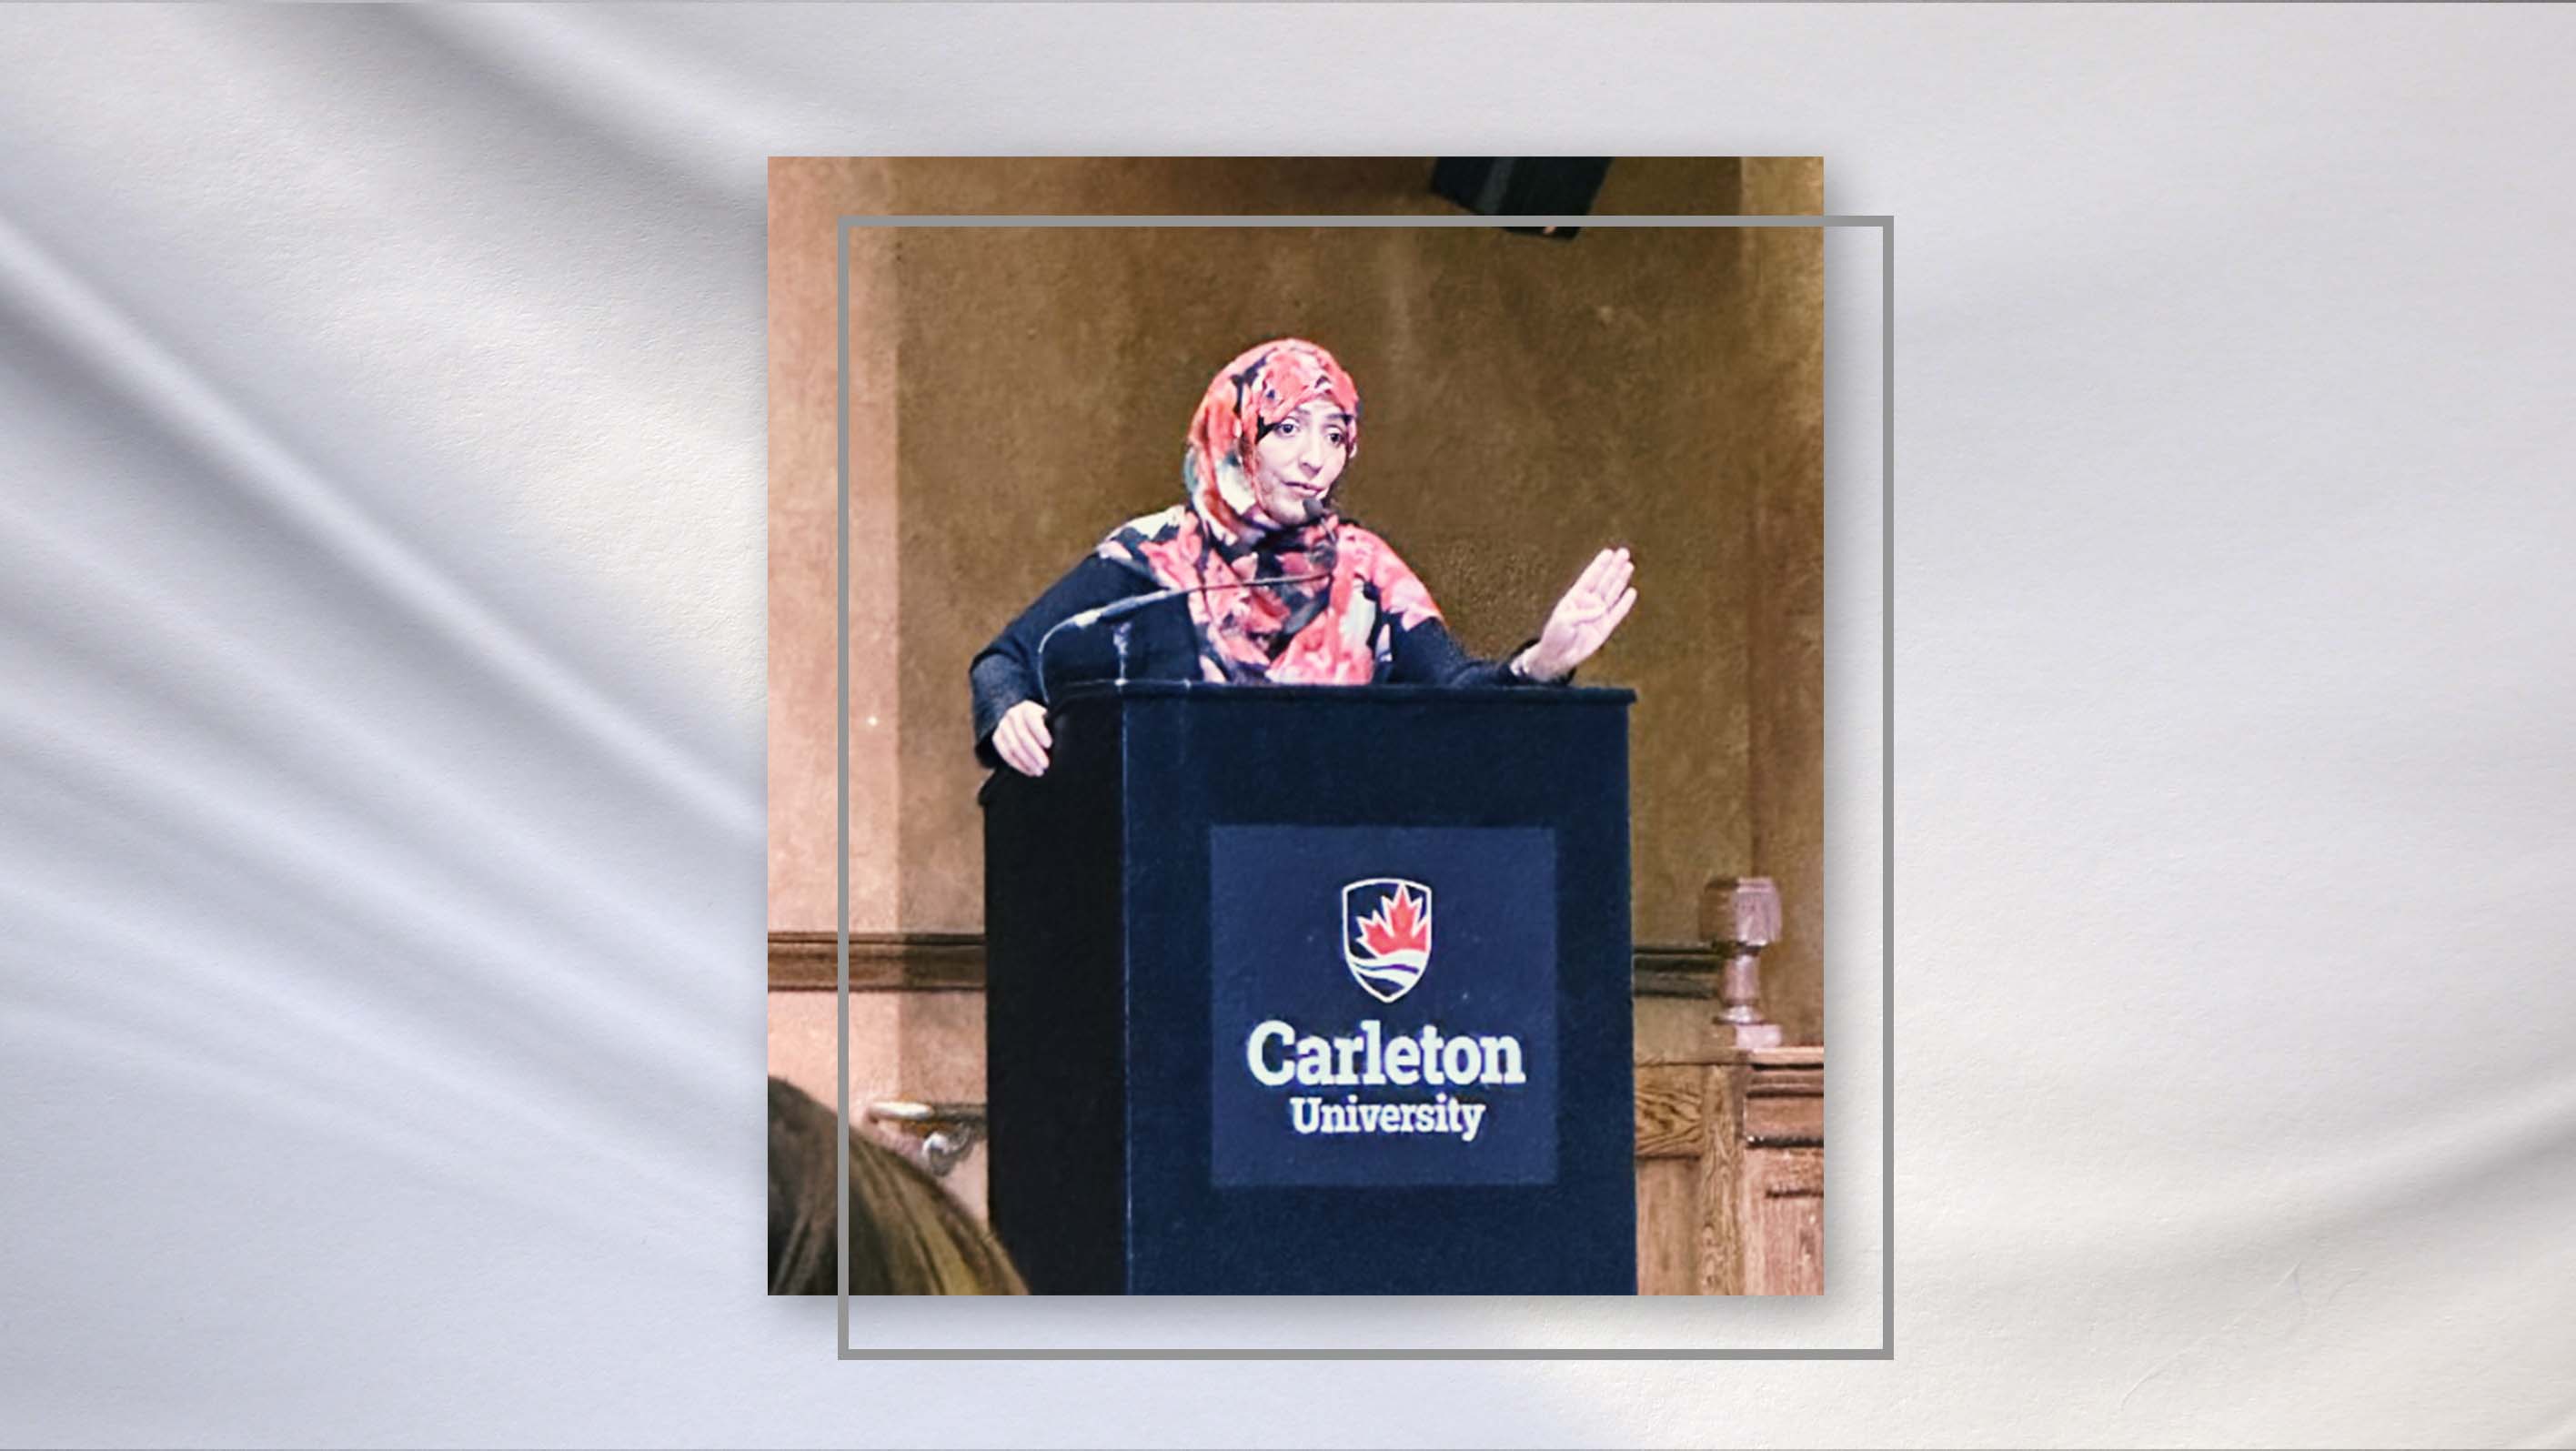 Mrs. Karman Speech at “Scholars at Risk Summit” - Ottawa